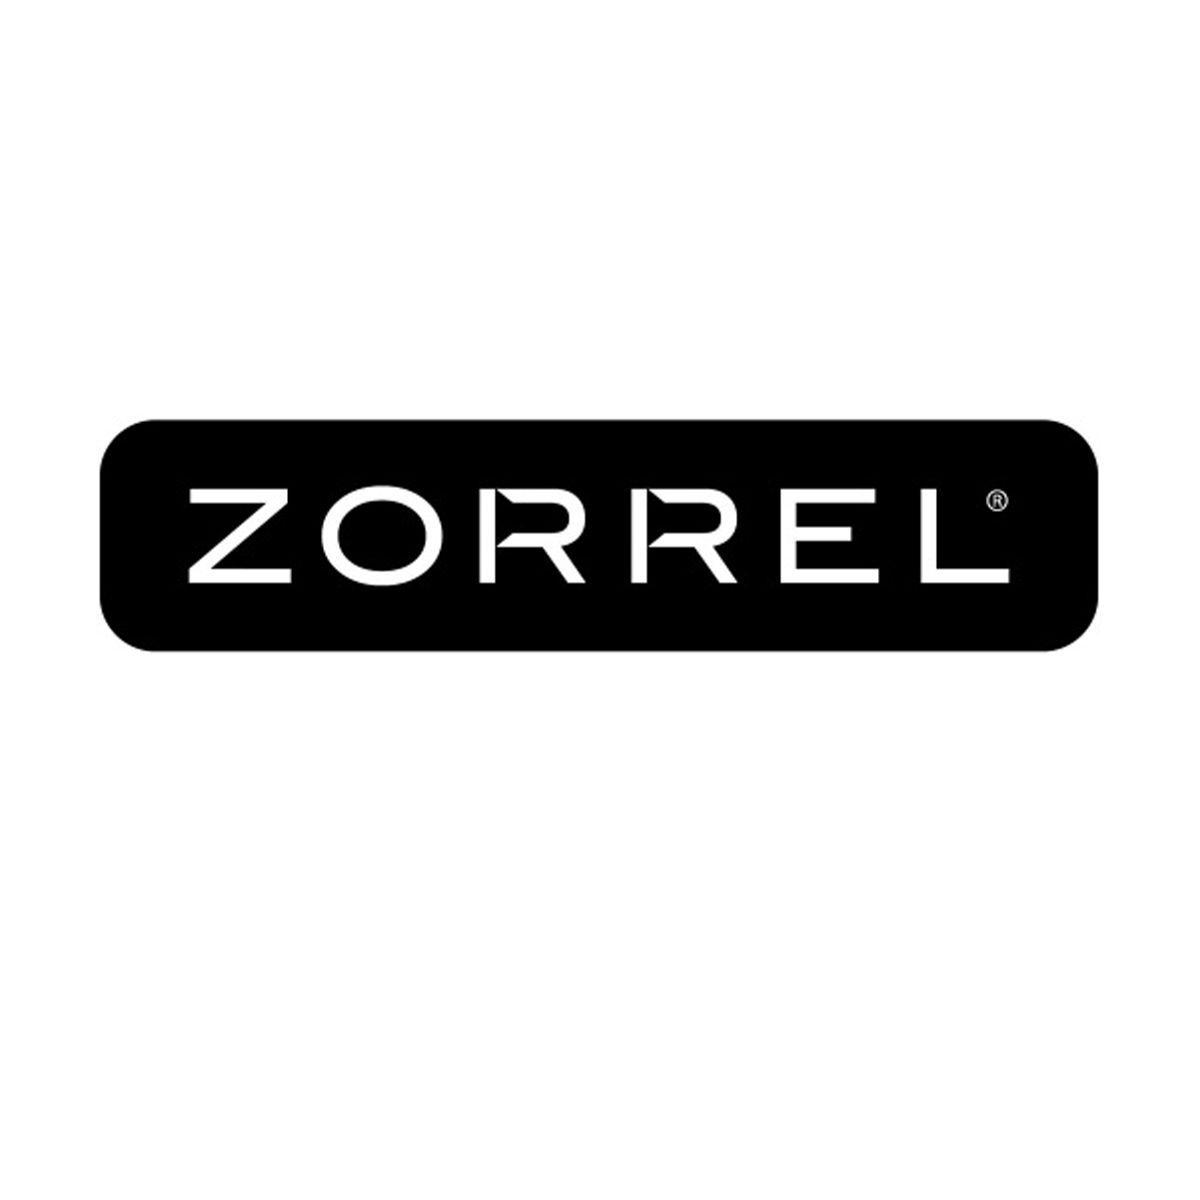 Zorrel Logo - Zorrel. Zorrel. Mountain trails, Flip clock, Shopping